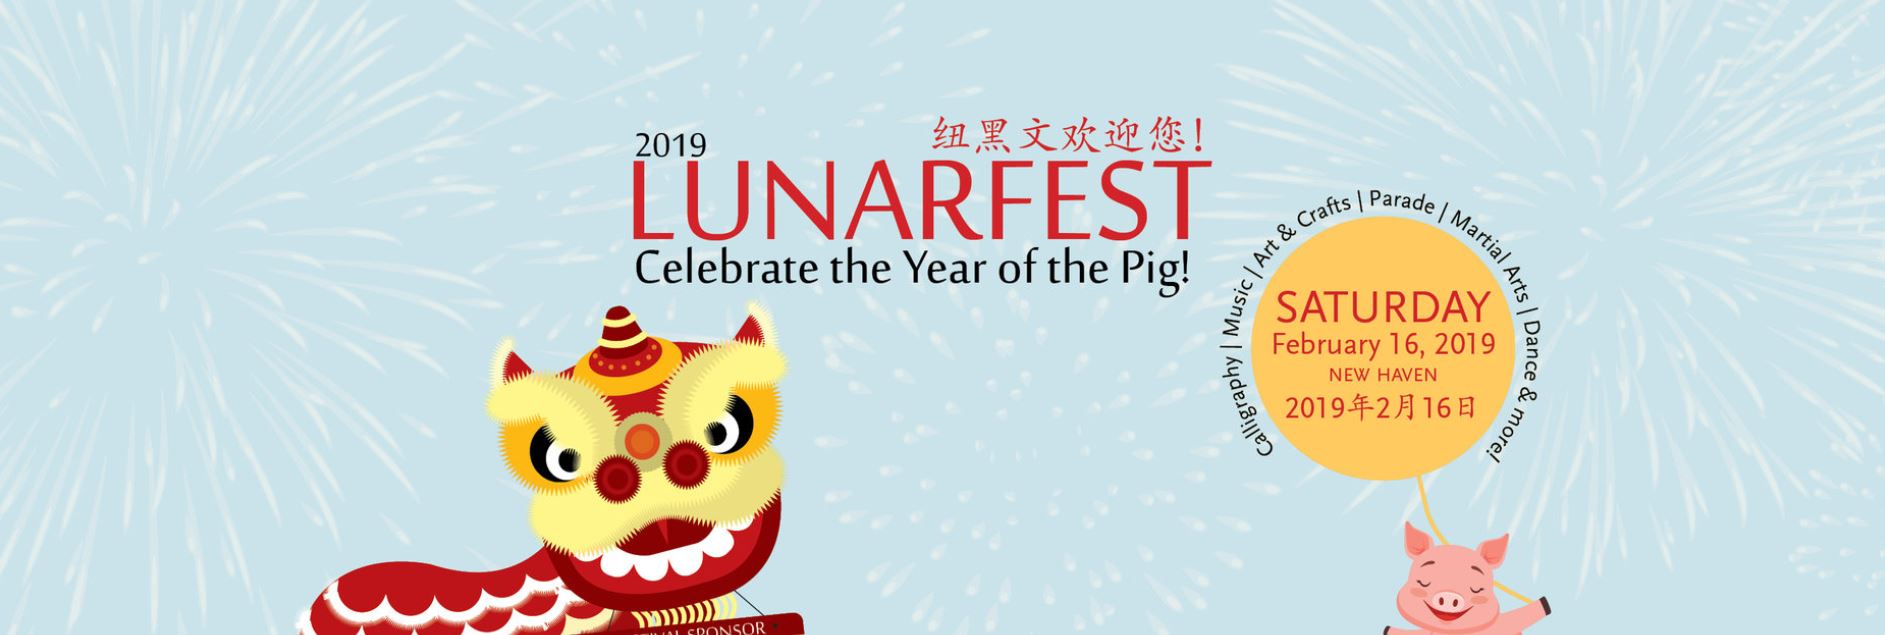 Aiping Tai Chi Center, Lunarfest, Yale-China Association, Qigong, Tai Chi